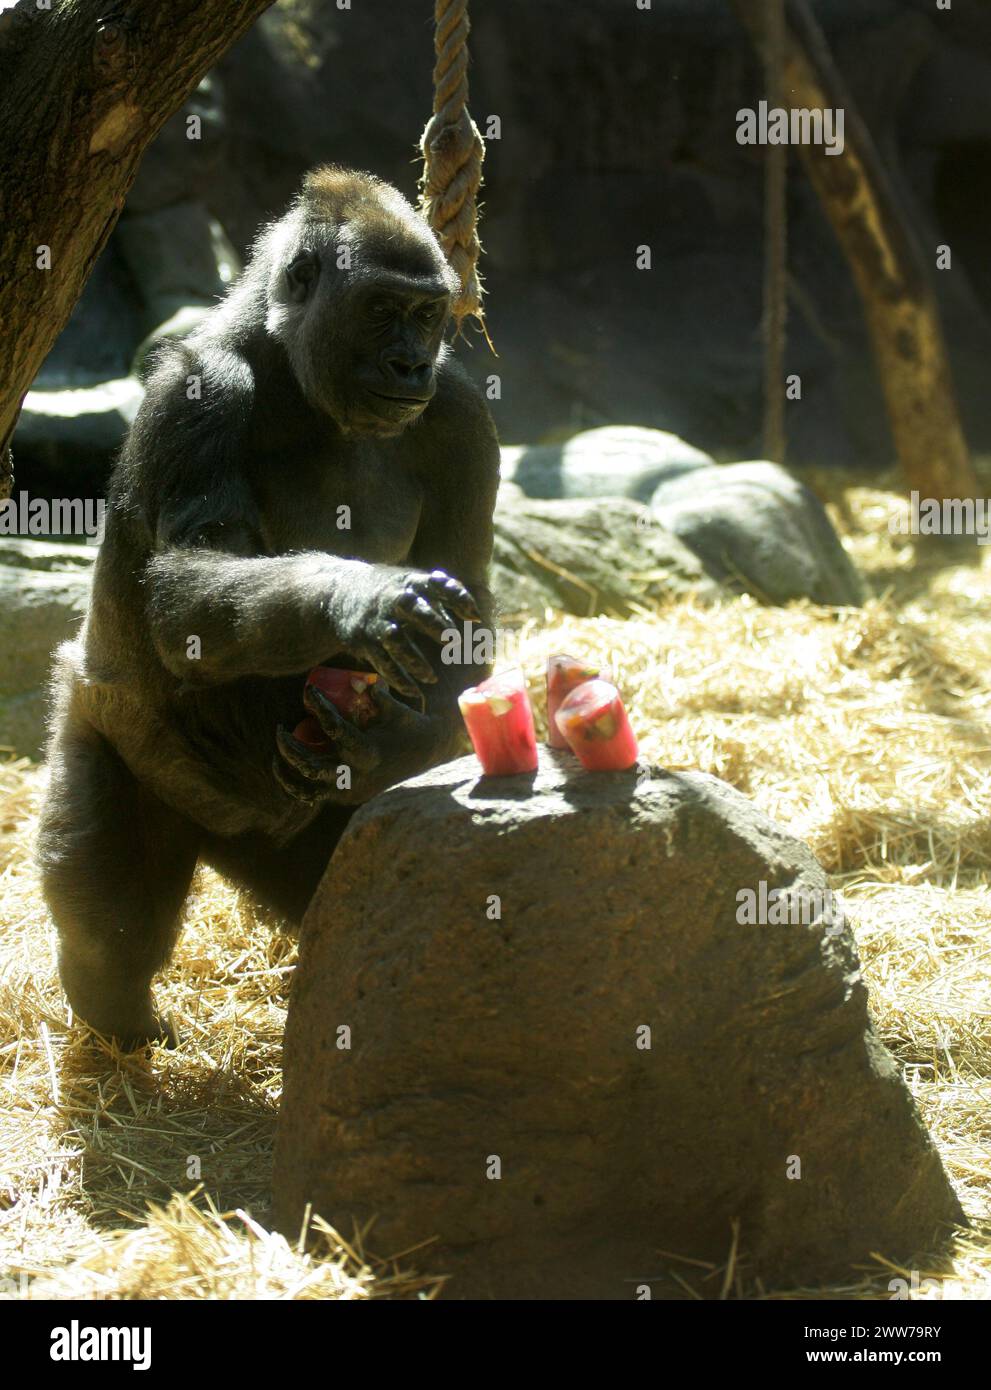 27/06/11 AUJOURD'HUI PHOTO..C'est l'heure de Pimm comme Asili le gorille sort les boissons aux fruits surgelés... le zoo le plus proche de Wimbledon marque quarante ans de service Banque D'Images